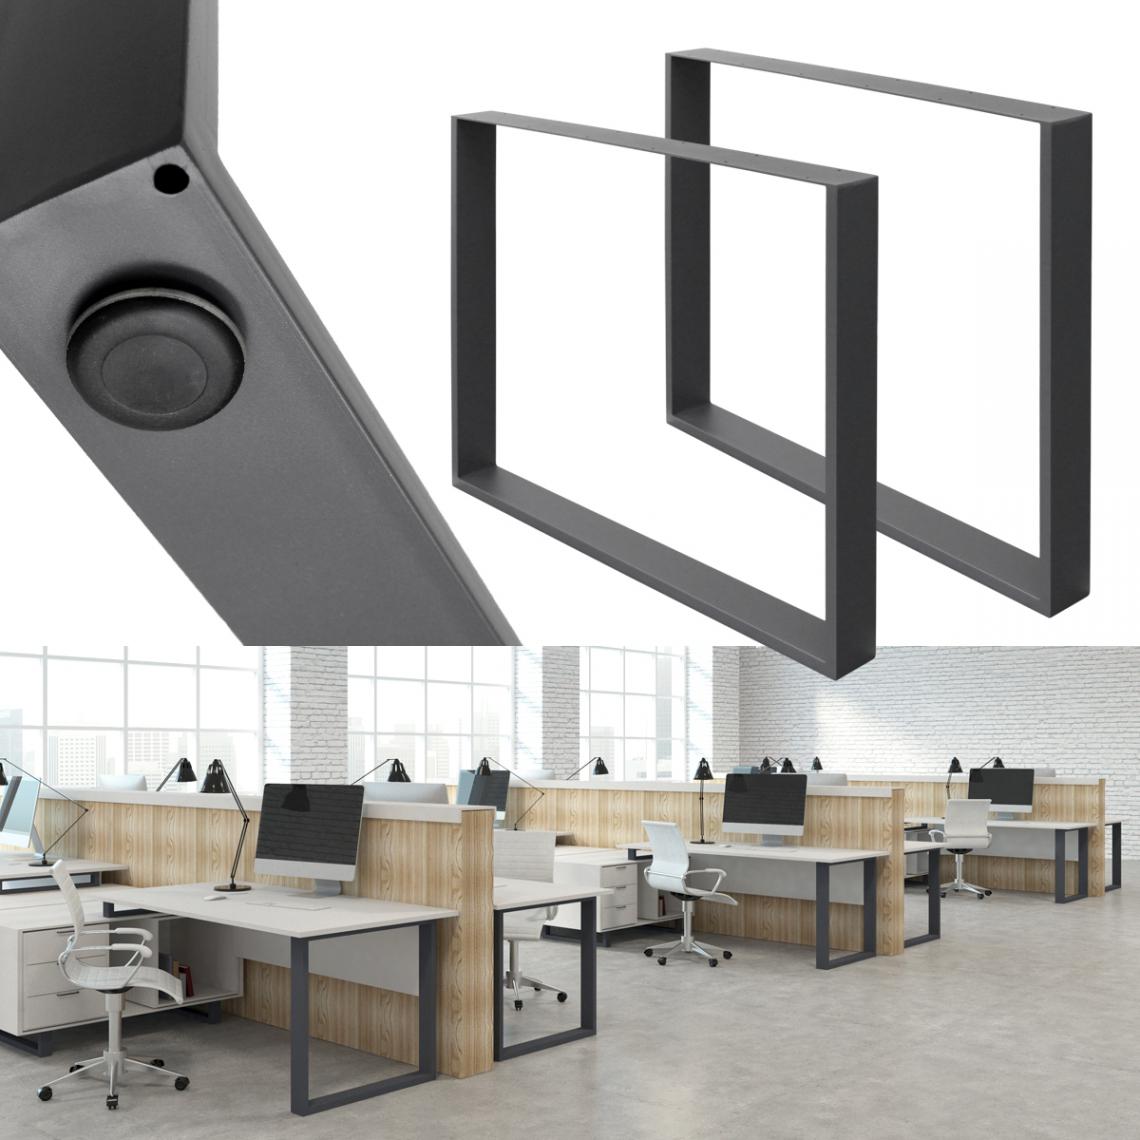 Ecd Germany - 2x Pieds de table industriel piètement pied meuble acier gris foncé 80 x 72 cm - Pieds & roulettes pour meuble